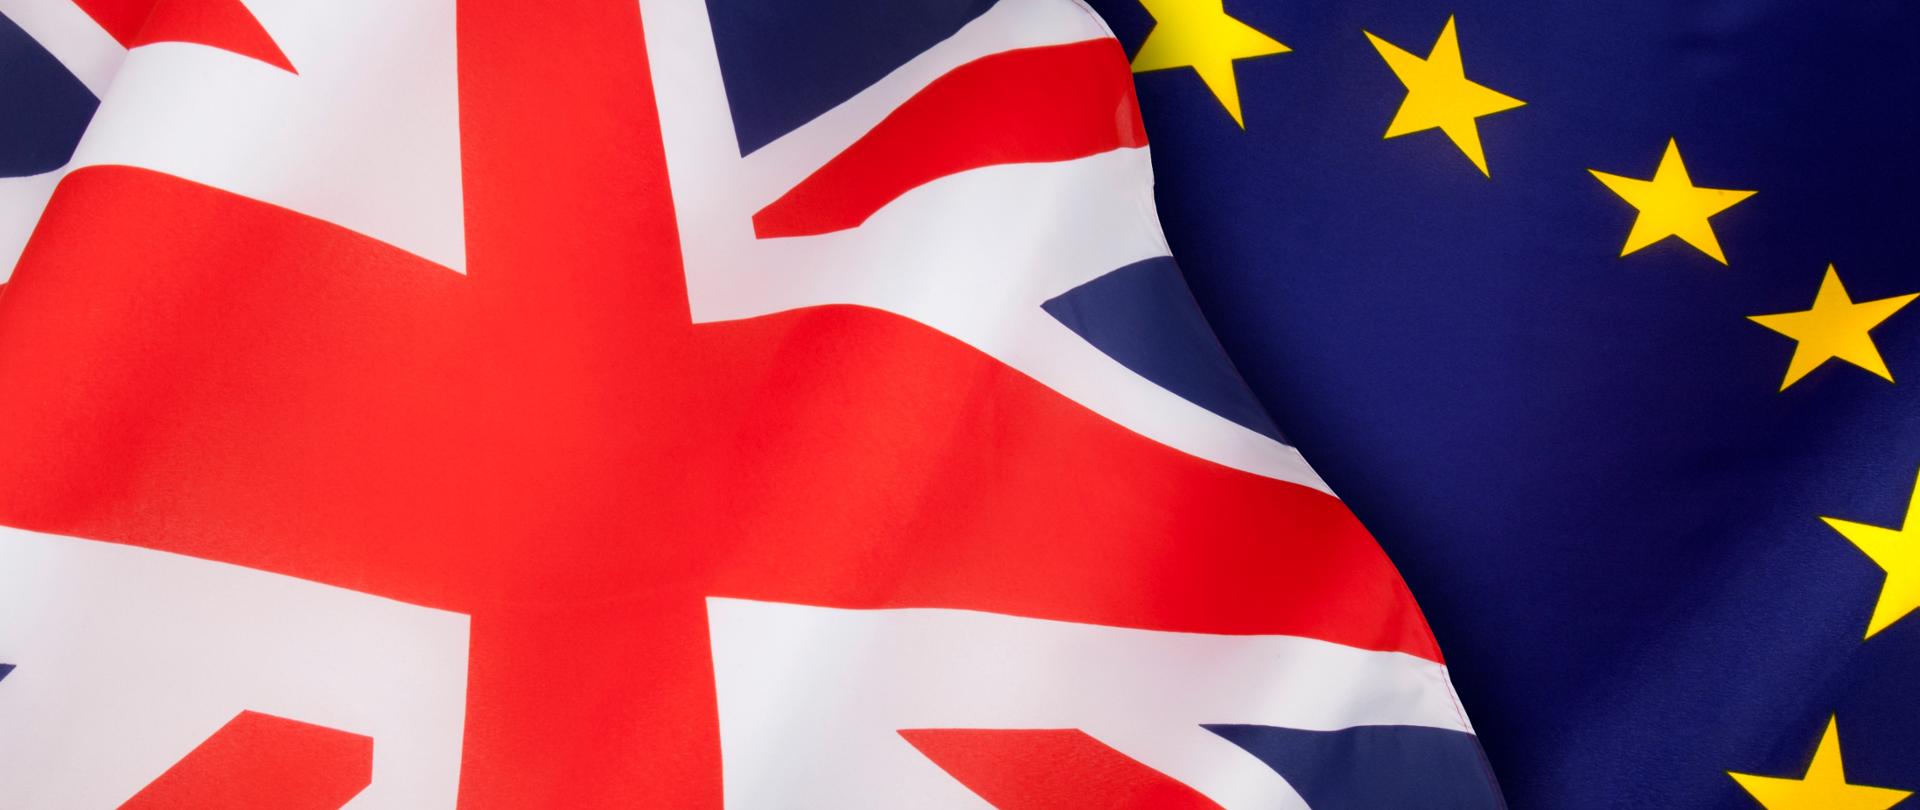 Flagi Wielkiej Brytanii (po lewej) i Unii Europejskiej (po prawej).